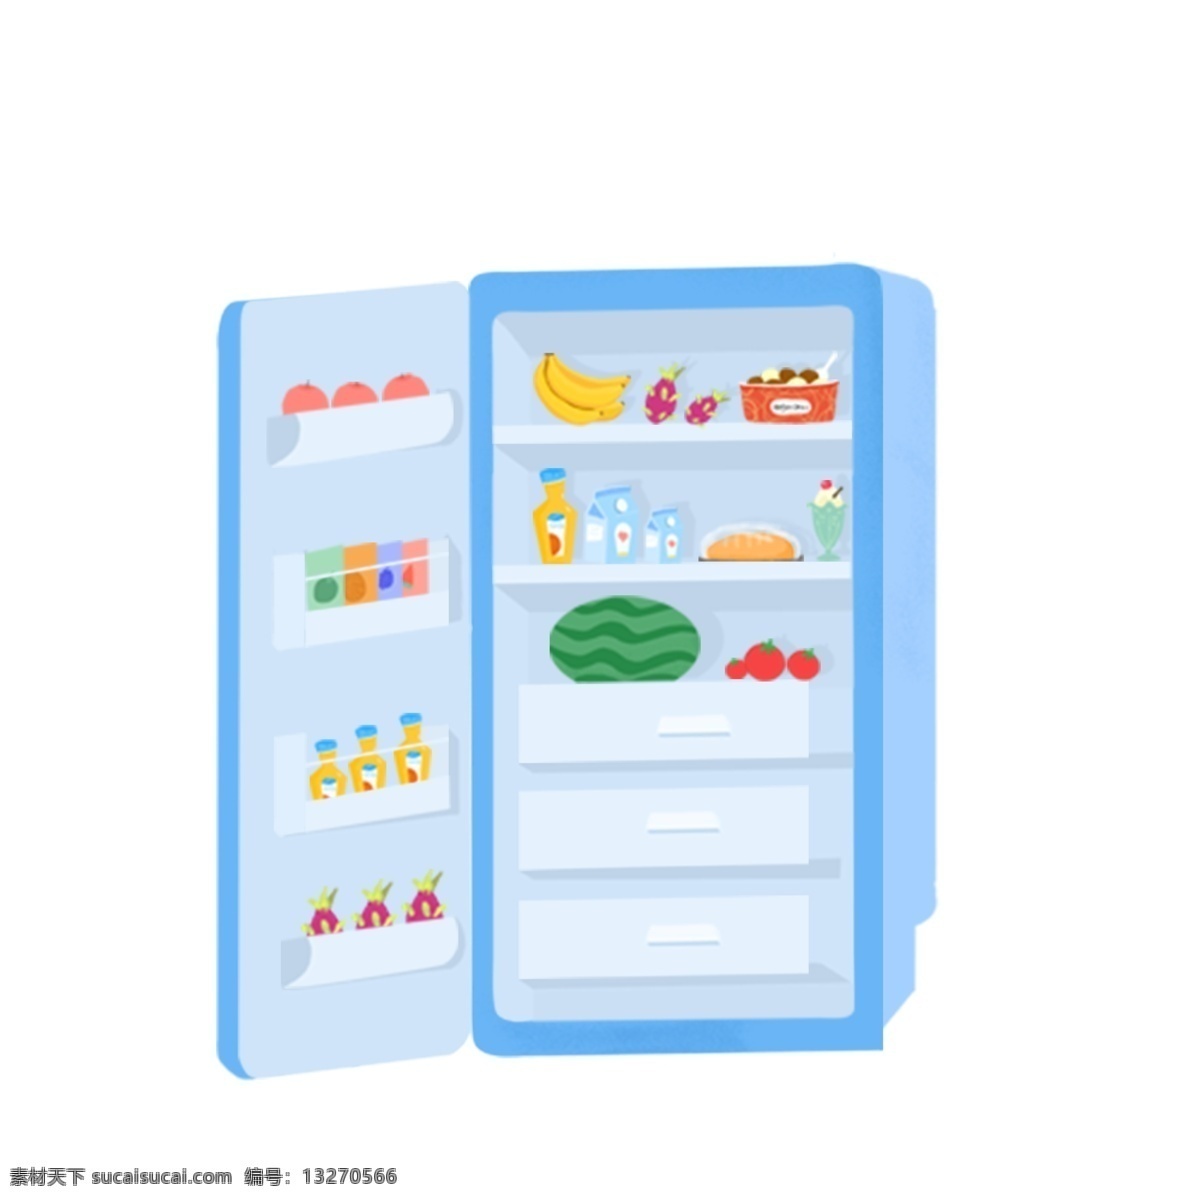 装修 满 食物 冰箱 图案 元素 家电 冰箱图案 西瓜 打开的冰箱 满水果的冰箱 创意元素 手绘元素 psd元素